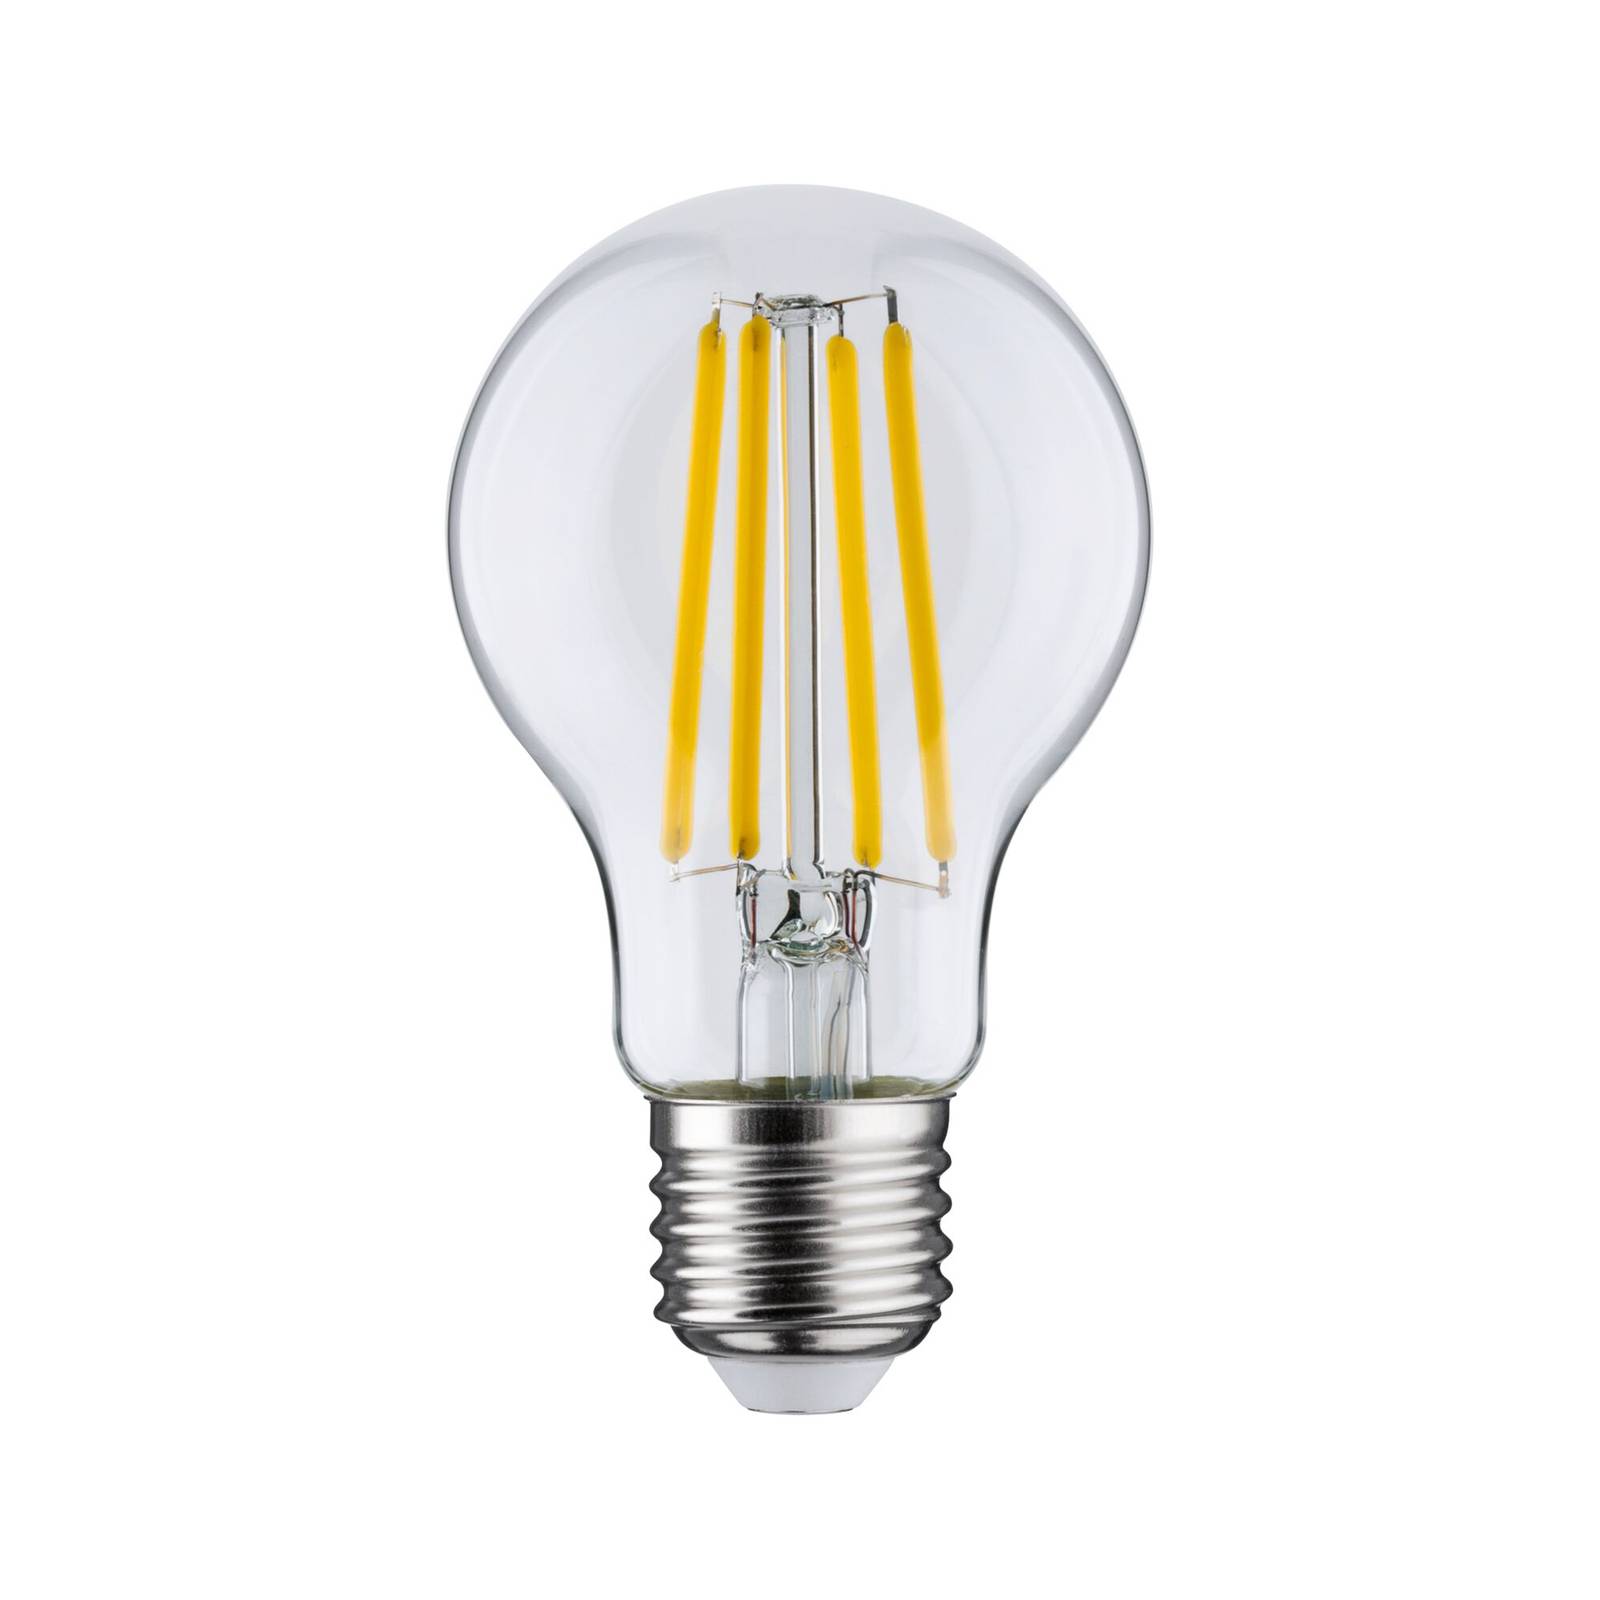 Paulmann Eco-Line ampoule LED E27 2,5W 525lm 3000K